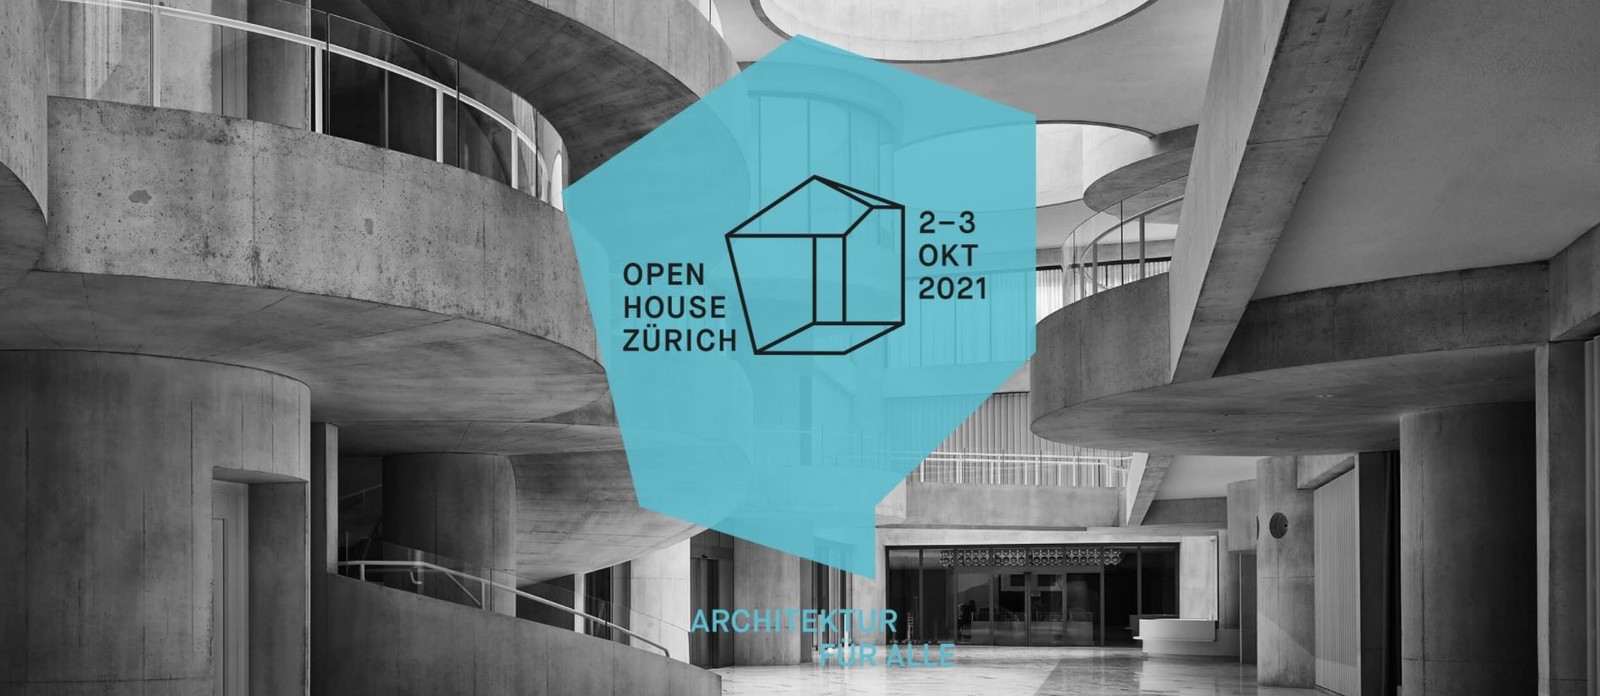 Open House Zurich